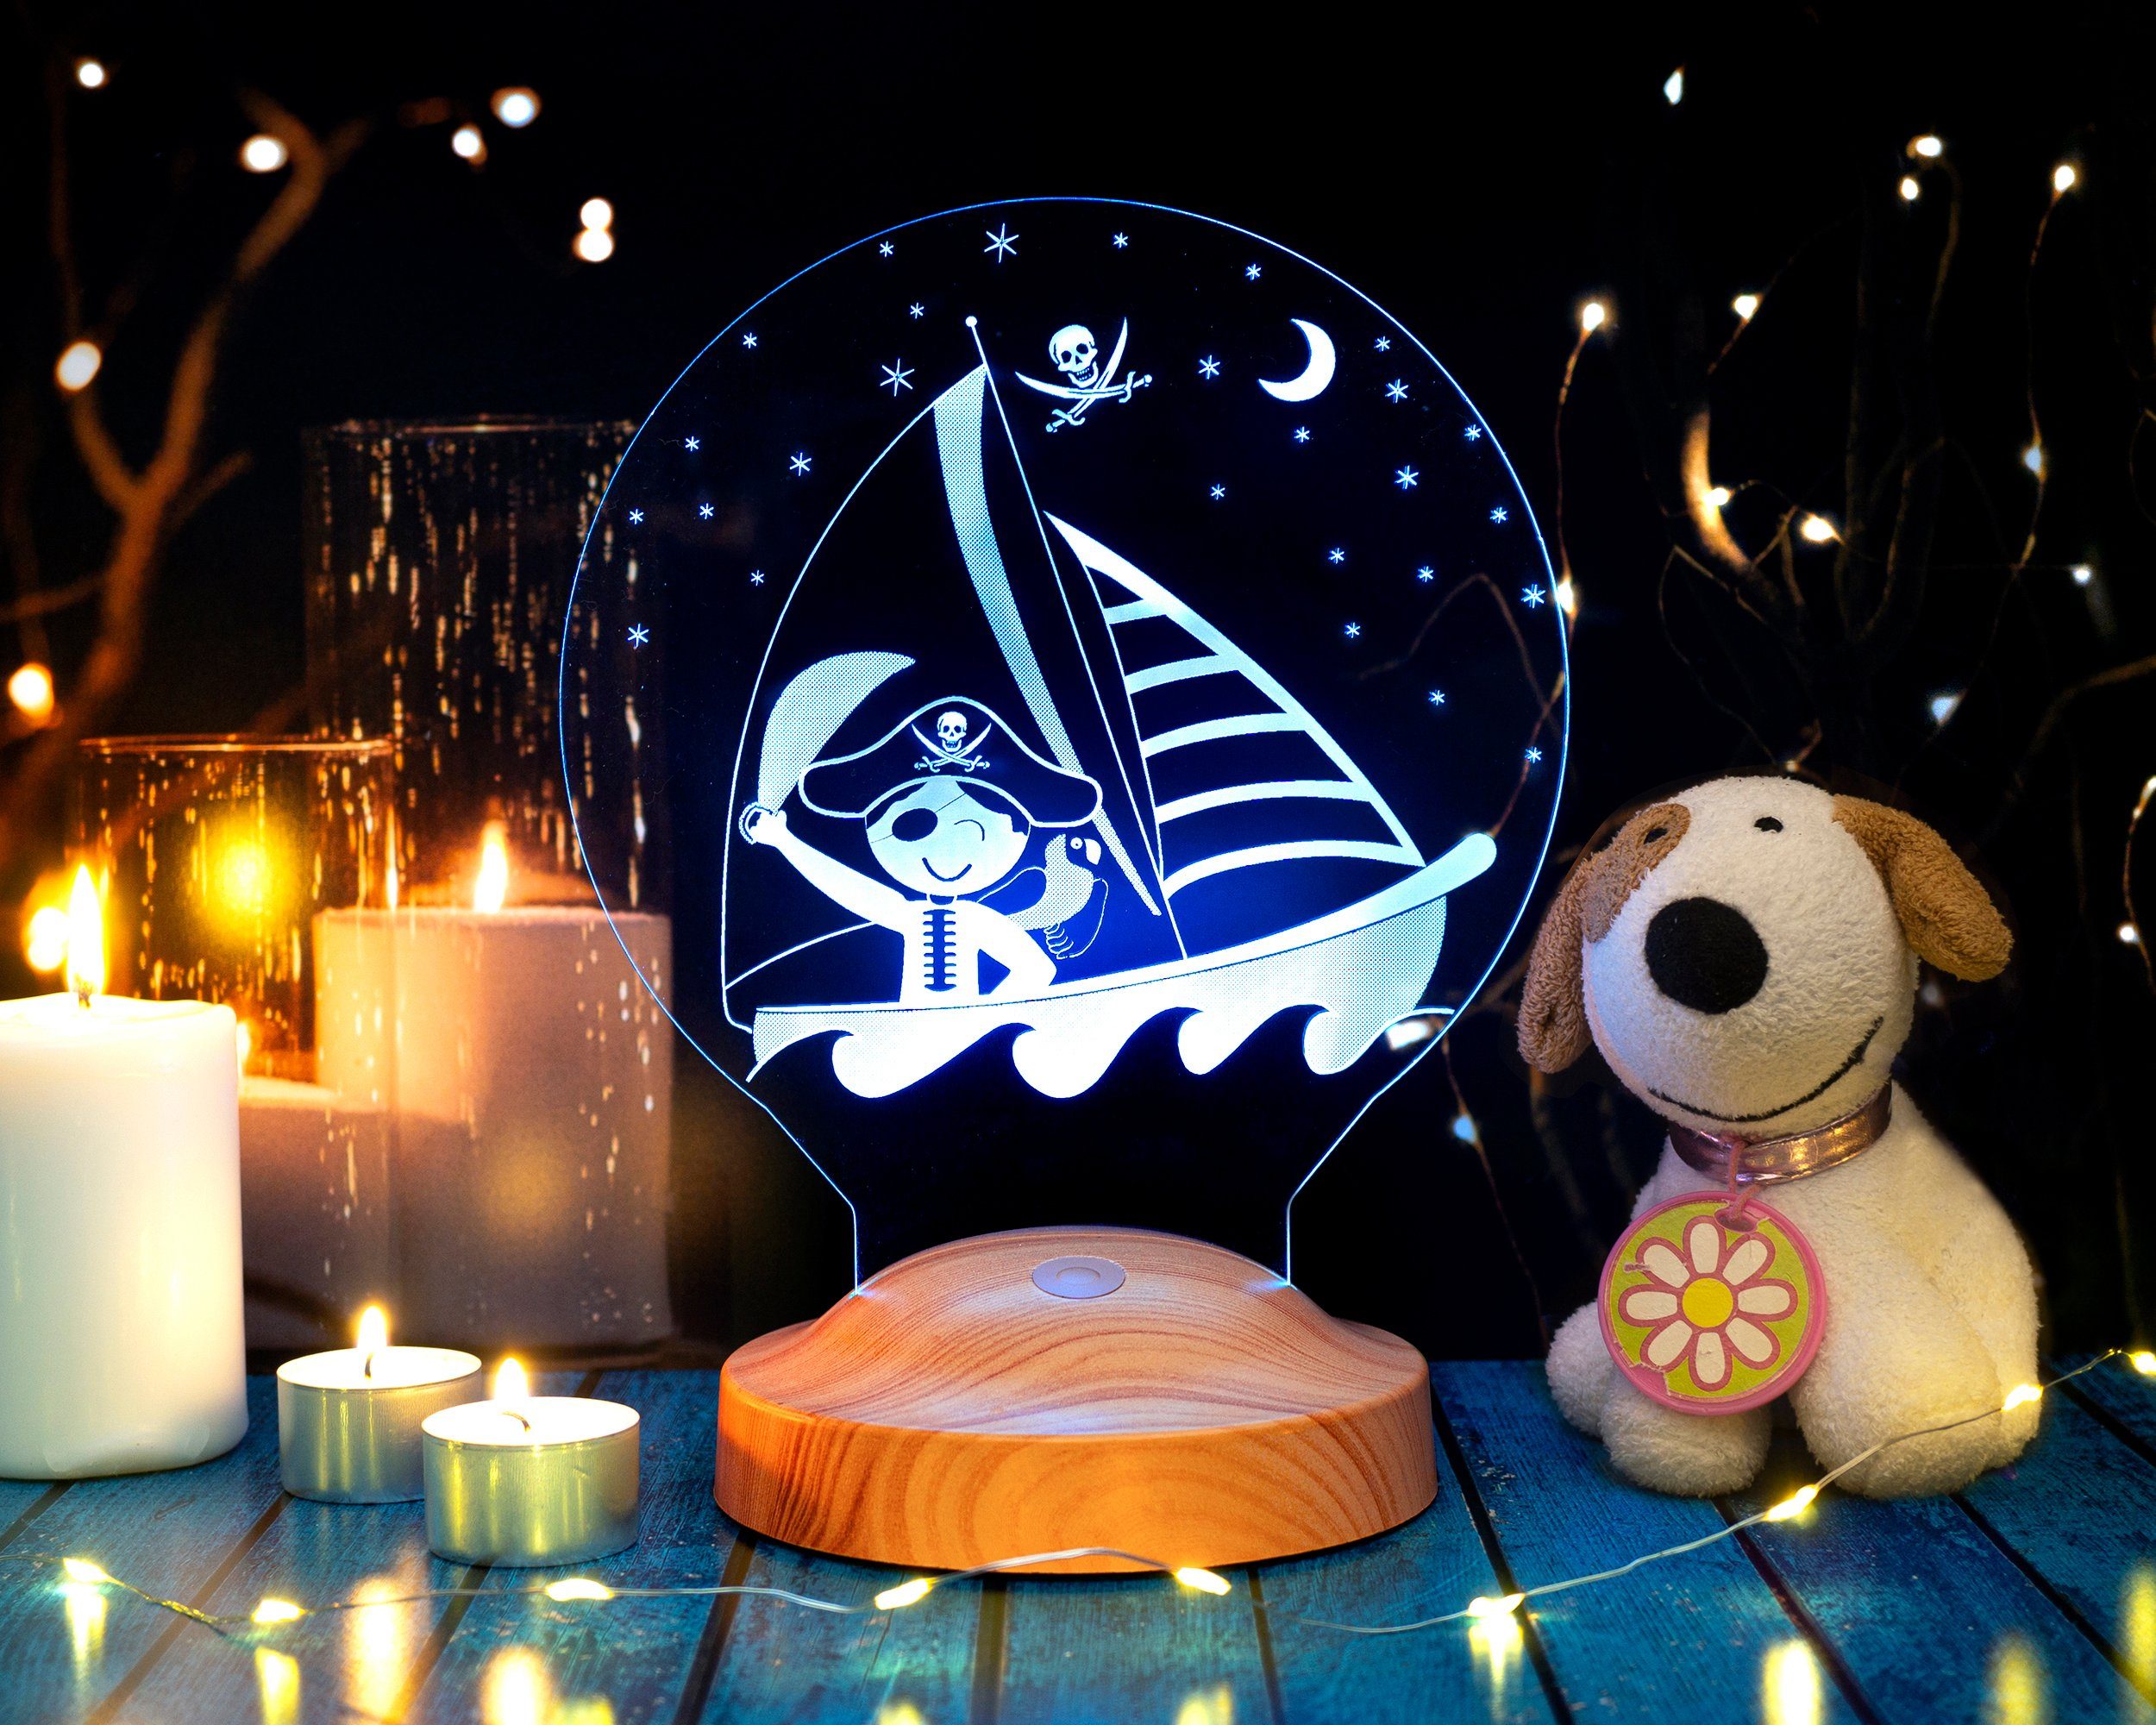 Geschenkelampe LED Nachttischlampe Baby Pirat 3D Personalisierte Lampe Geschenk für Kinder, Leuchte 7 Farben fest integriert, Geburtstagsgeschenk für Babys, Mädchen, Jungen